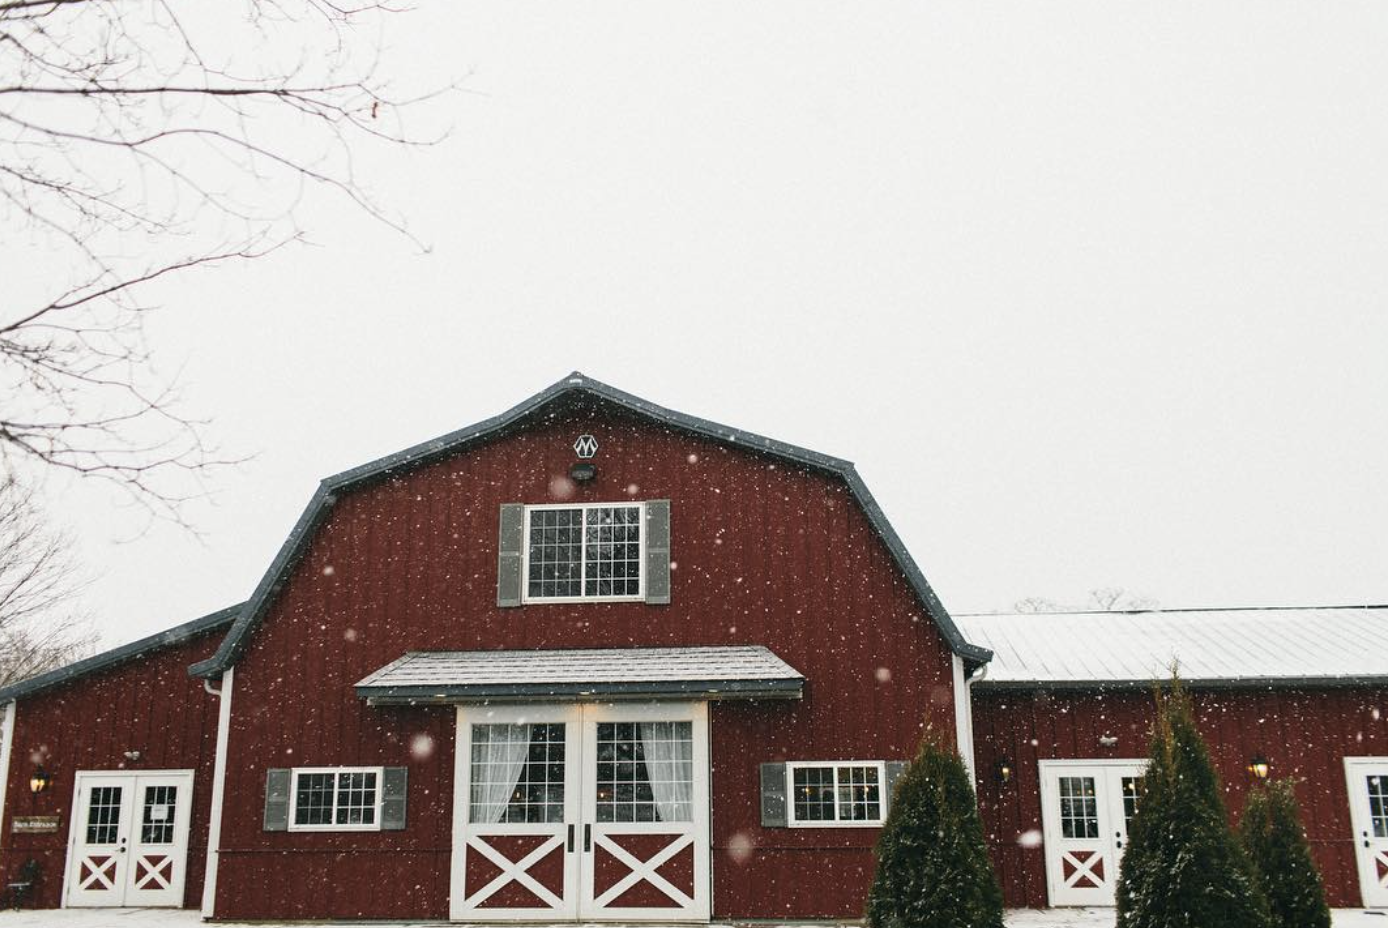 Indoor winter wedding venues in Wisconsin